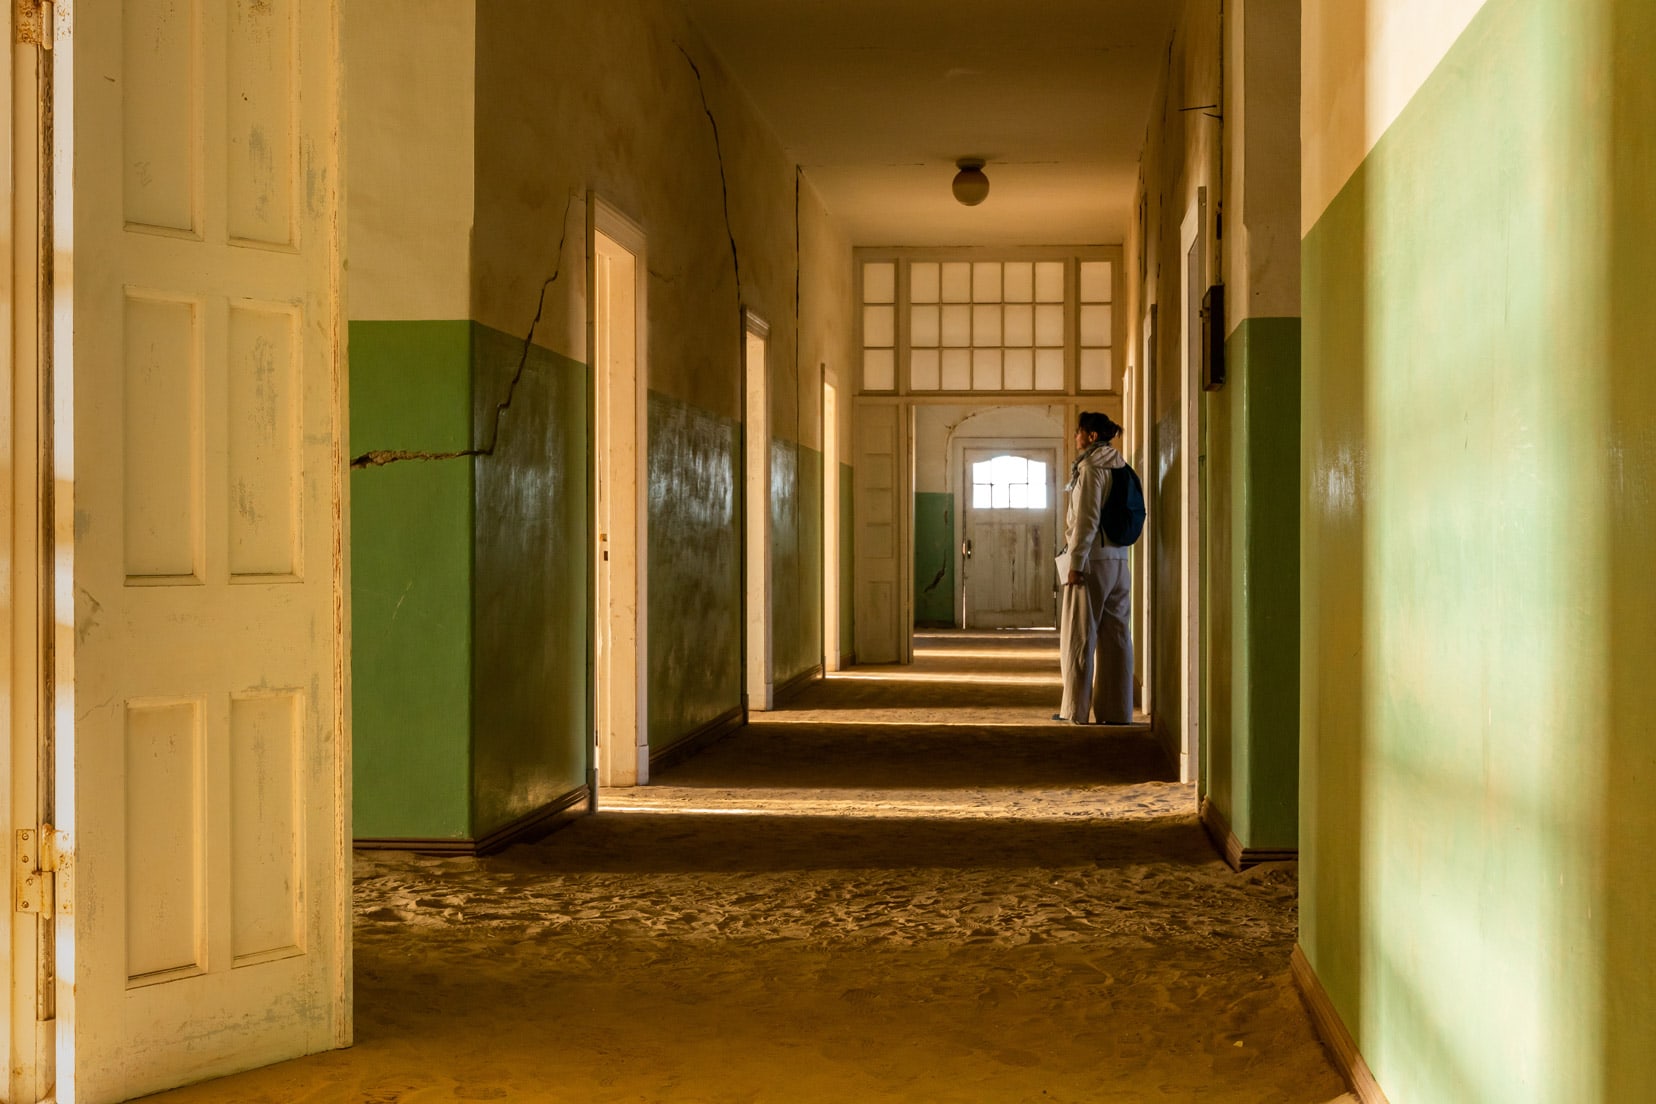 Shelley stood in hospital corridor at Kolmanskop